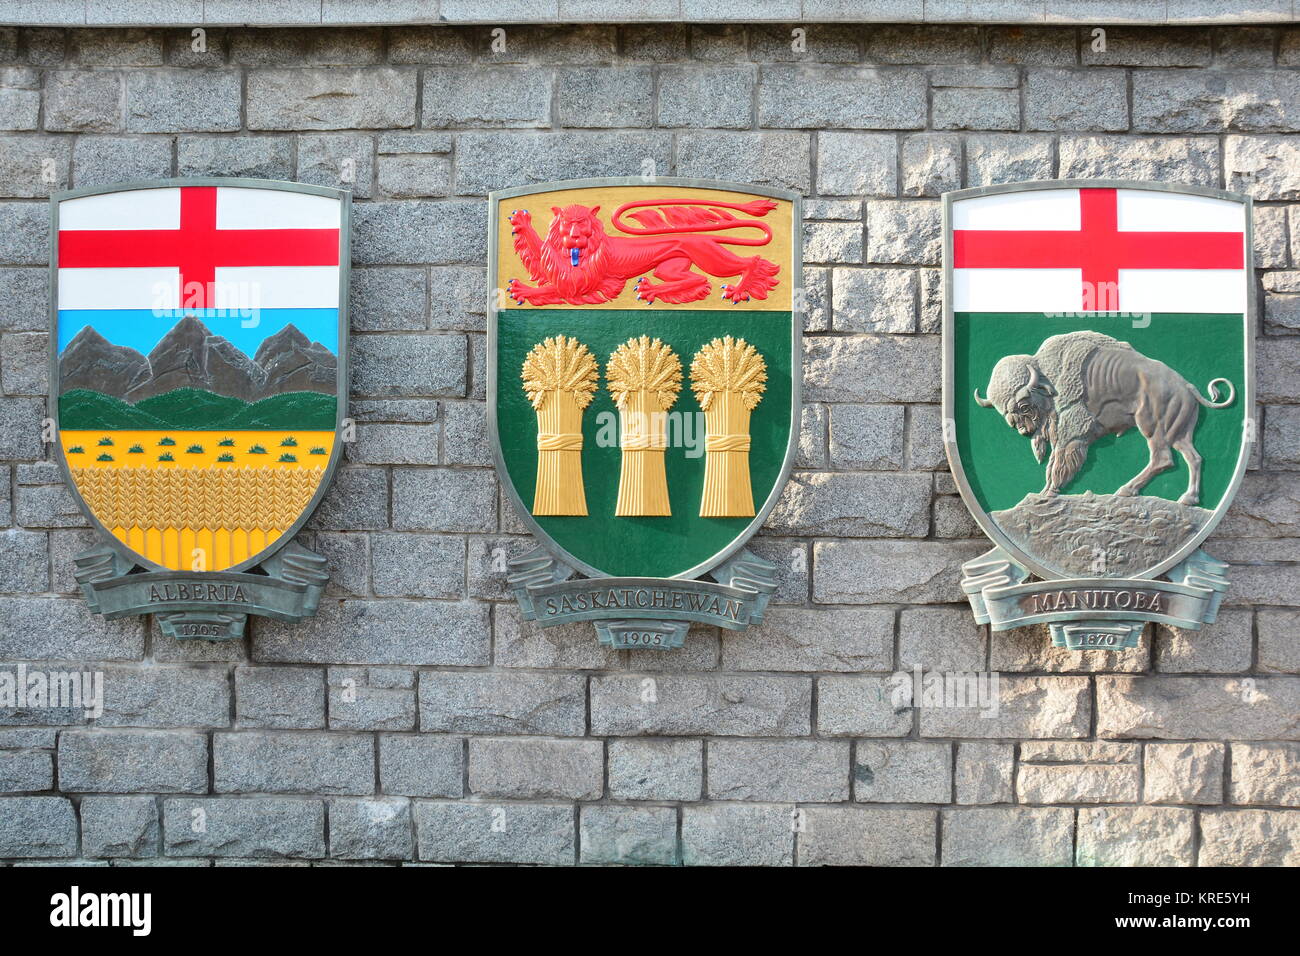 Les armoiries des provinces de l'Alberta, de la Saskatchewan et du Manitoba. Banque D'Images